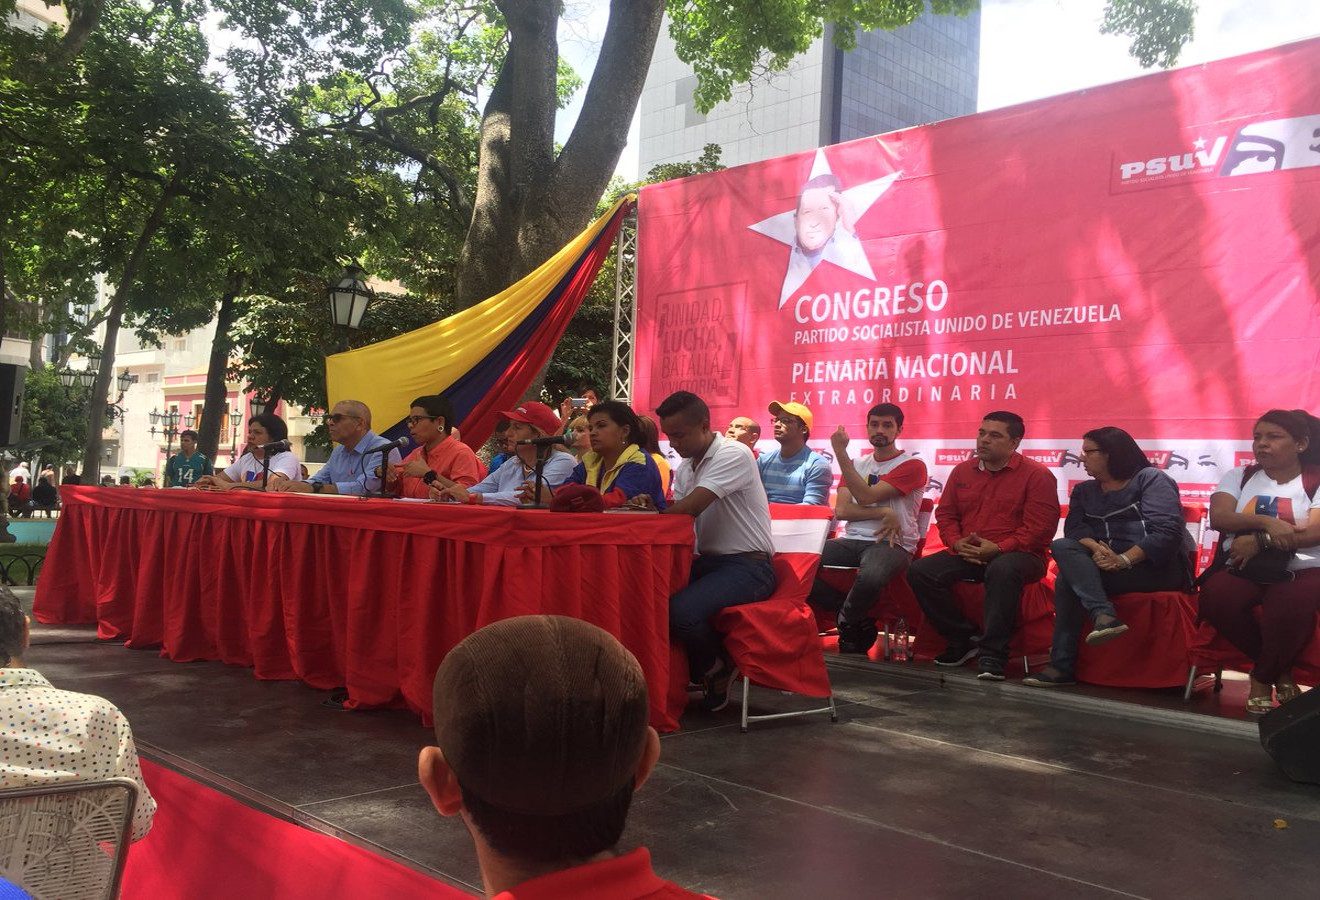 Para la escogencia de cada unidad parroquial en Caracas, se tenía que seleccionar a seis militantes, entre mujeres, adultos mayores y jóvenes, para que se escogiera uno por cada una de las 23 parroquias